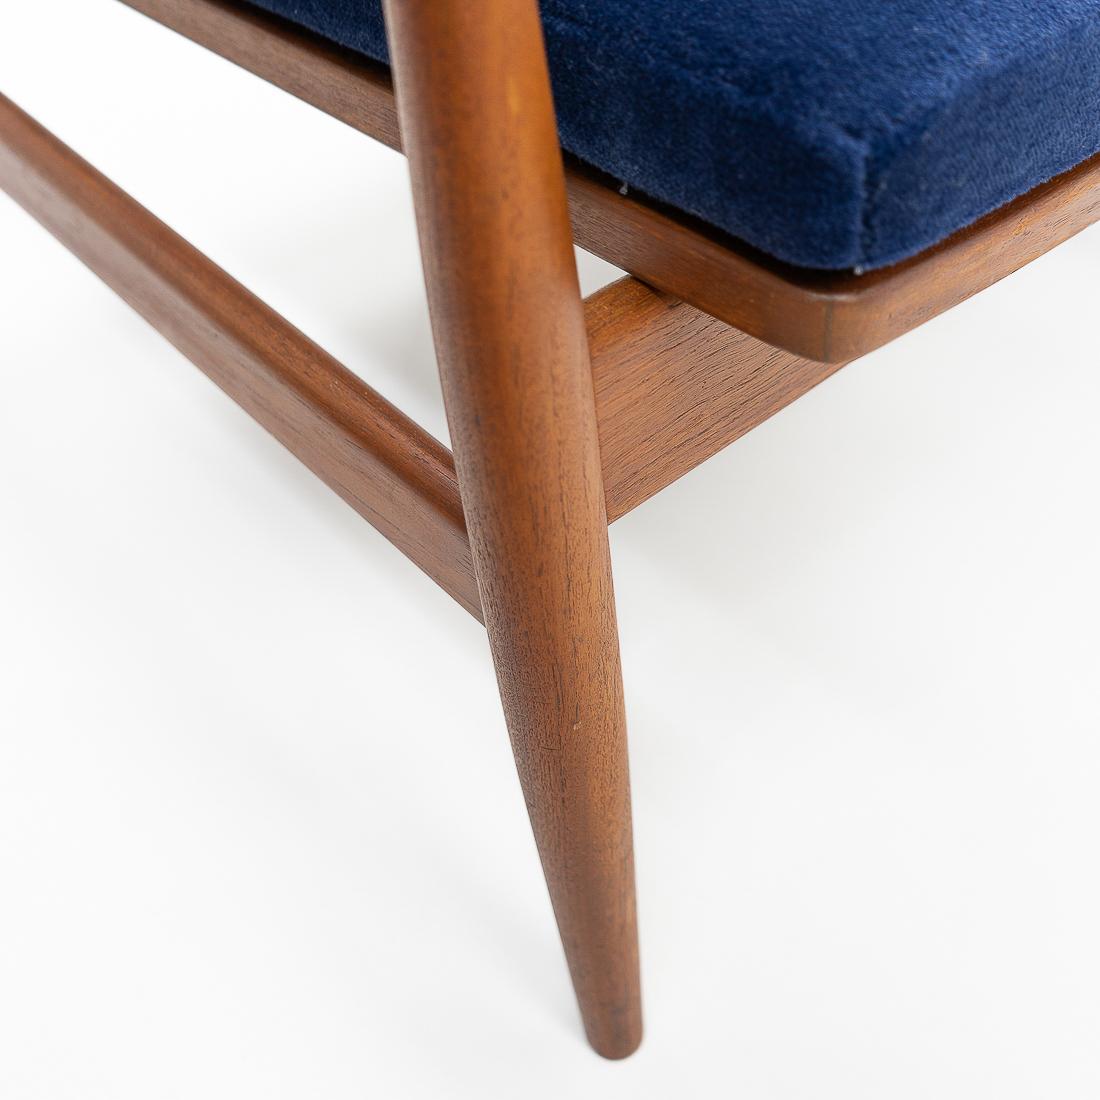 1950s Danish Design Classic Finn Juhl “Spade” Armchair, Upholstered in Mohair For Sale 3